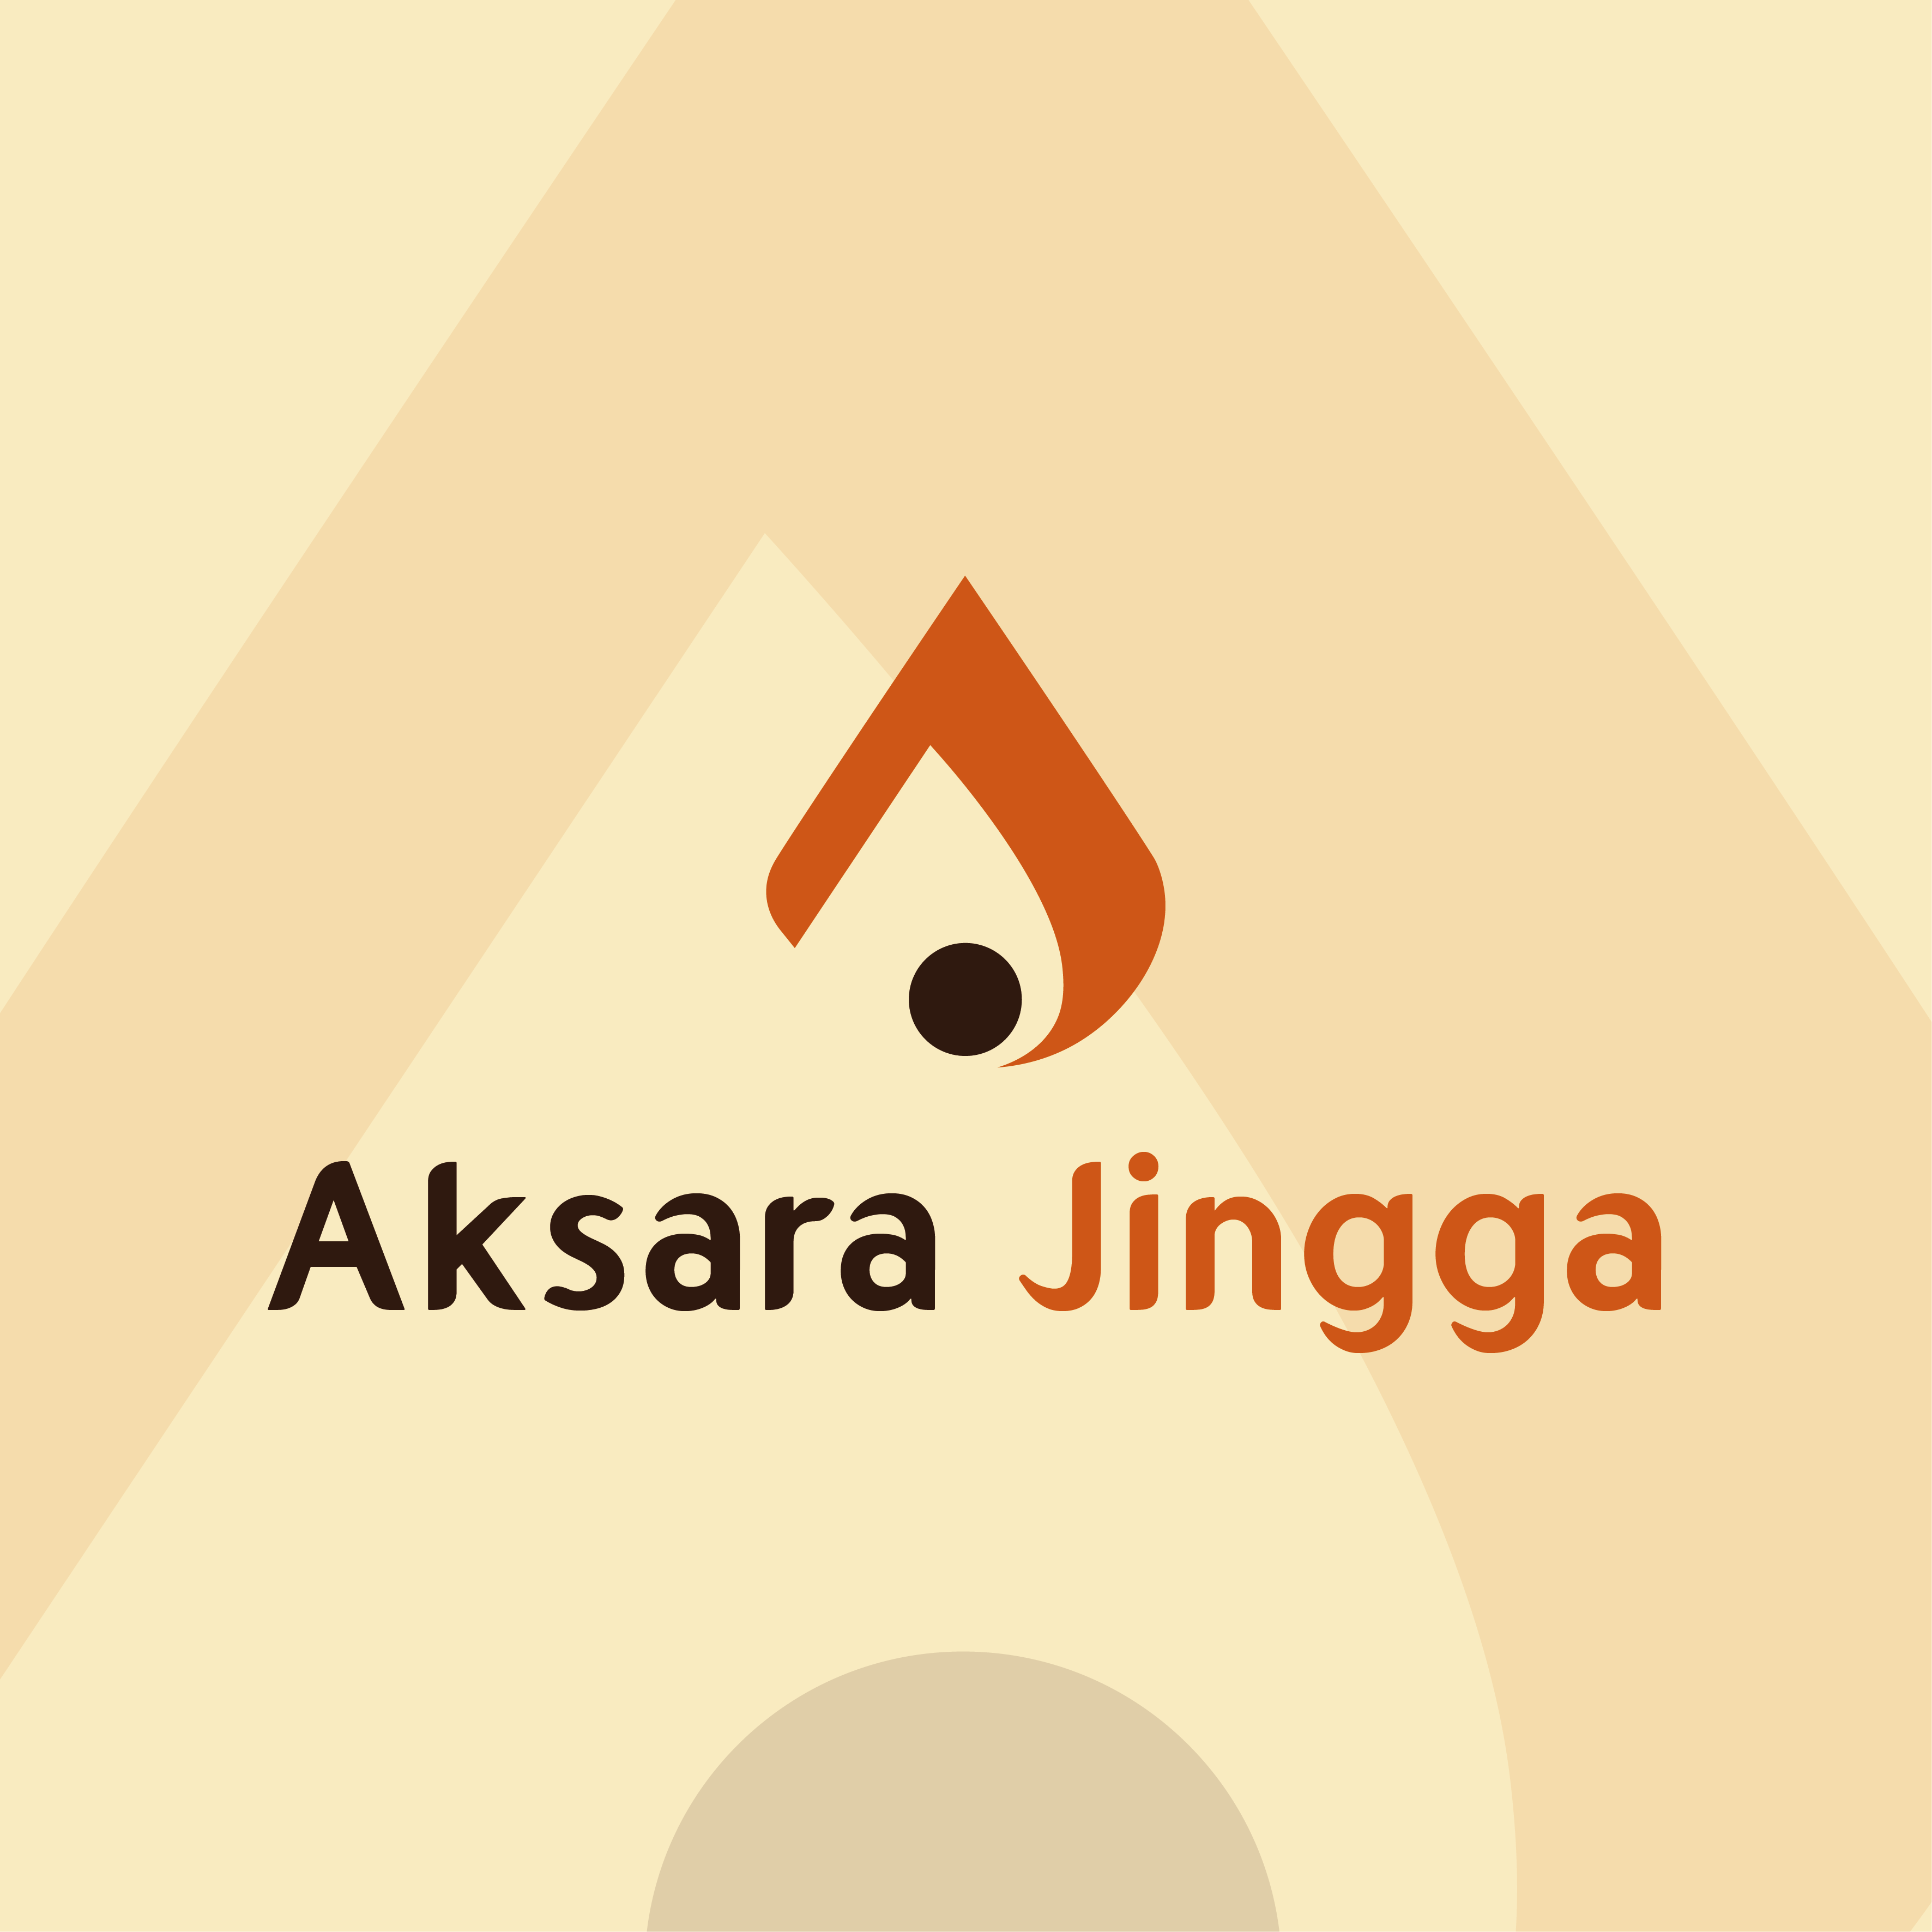 Aksara Jingga Logo Display - AksaraJingga.Com